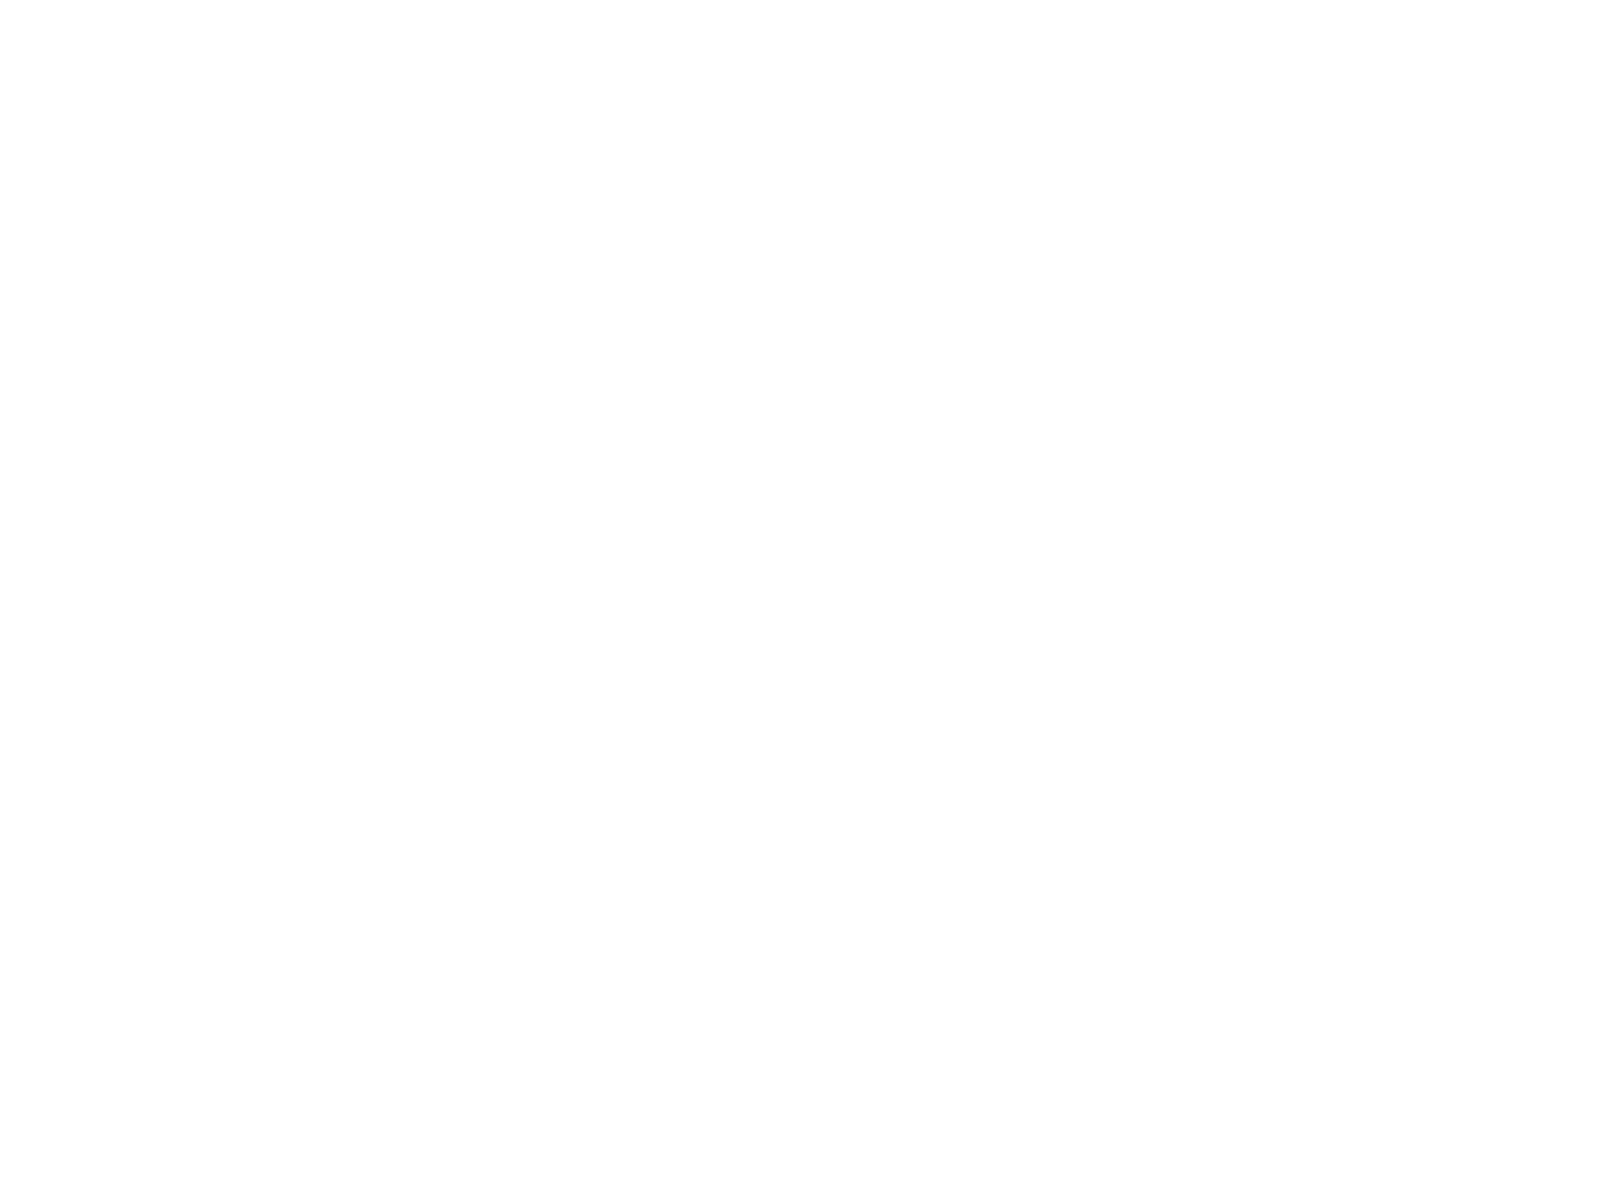 Uru、TVアニメ『グランベルム』EDテーマ「願い」グランベルム第1弾PVにて一部解禁サムネイル画像!